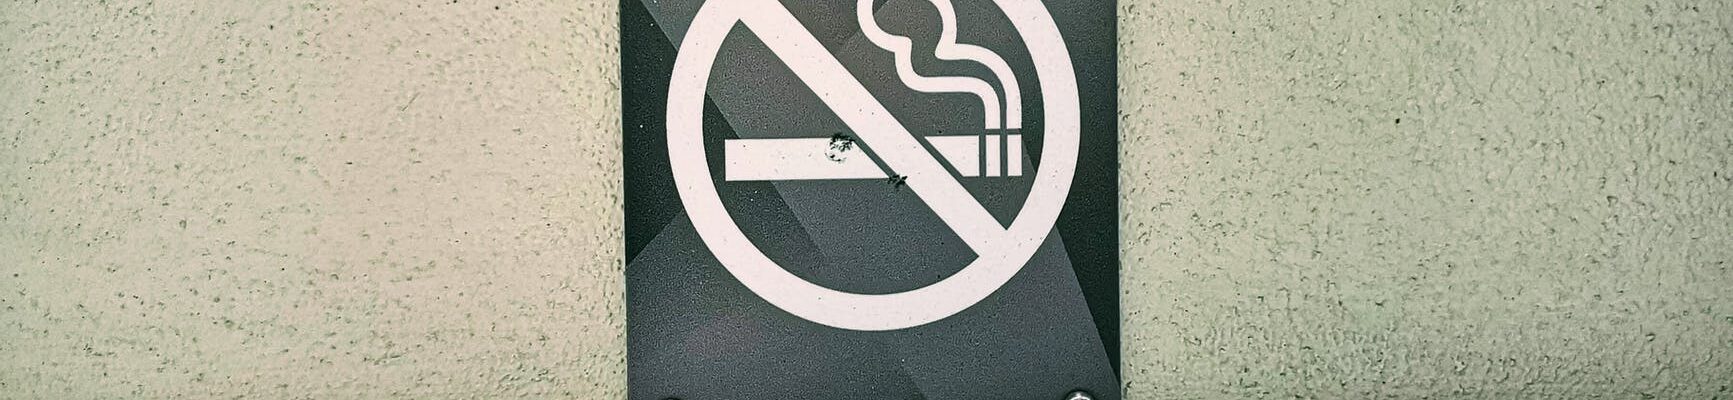 El fumar trae consecuencias a la salud